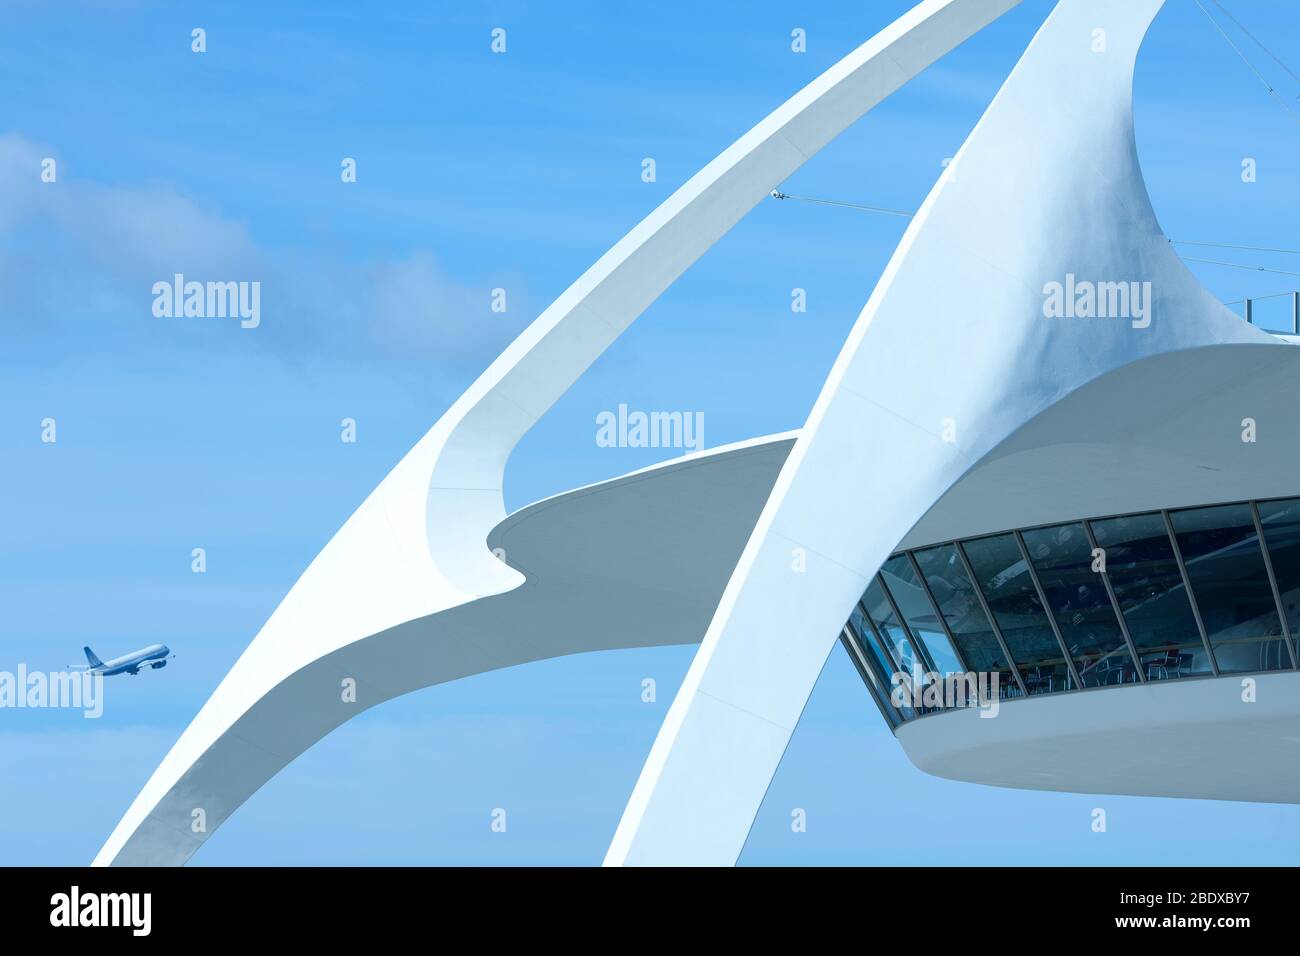 LAX, Aeroporto Internazionale di Los Angeles, Los Angeles, California - primo piano dell'architettura futuristica dell'edificio a tema. Foto Stock